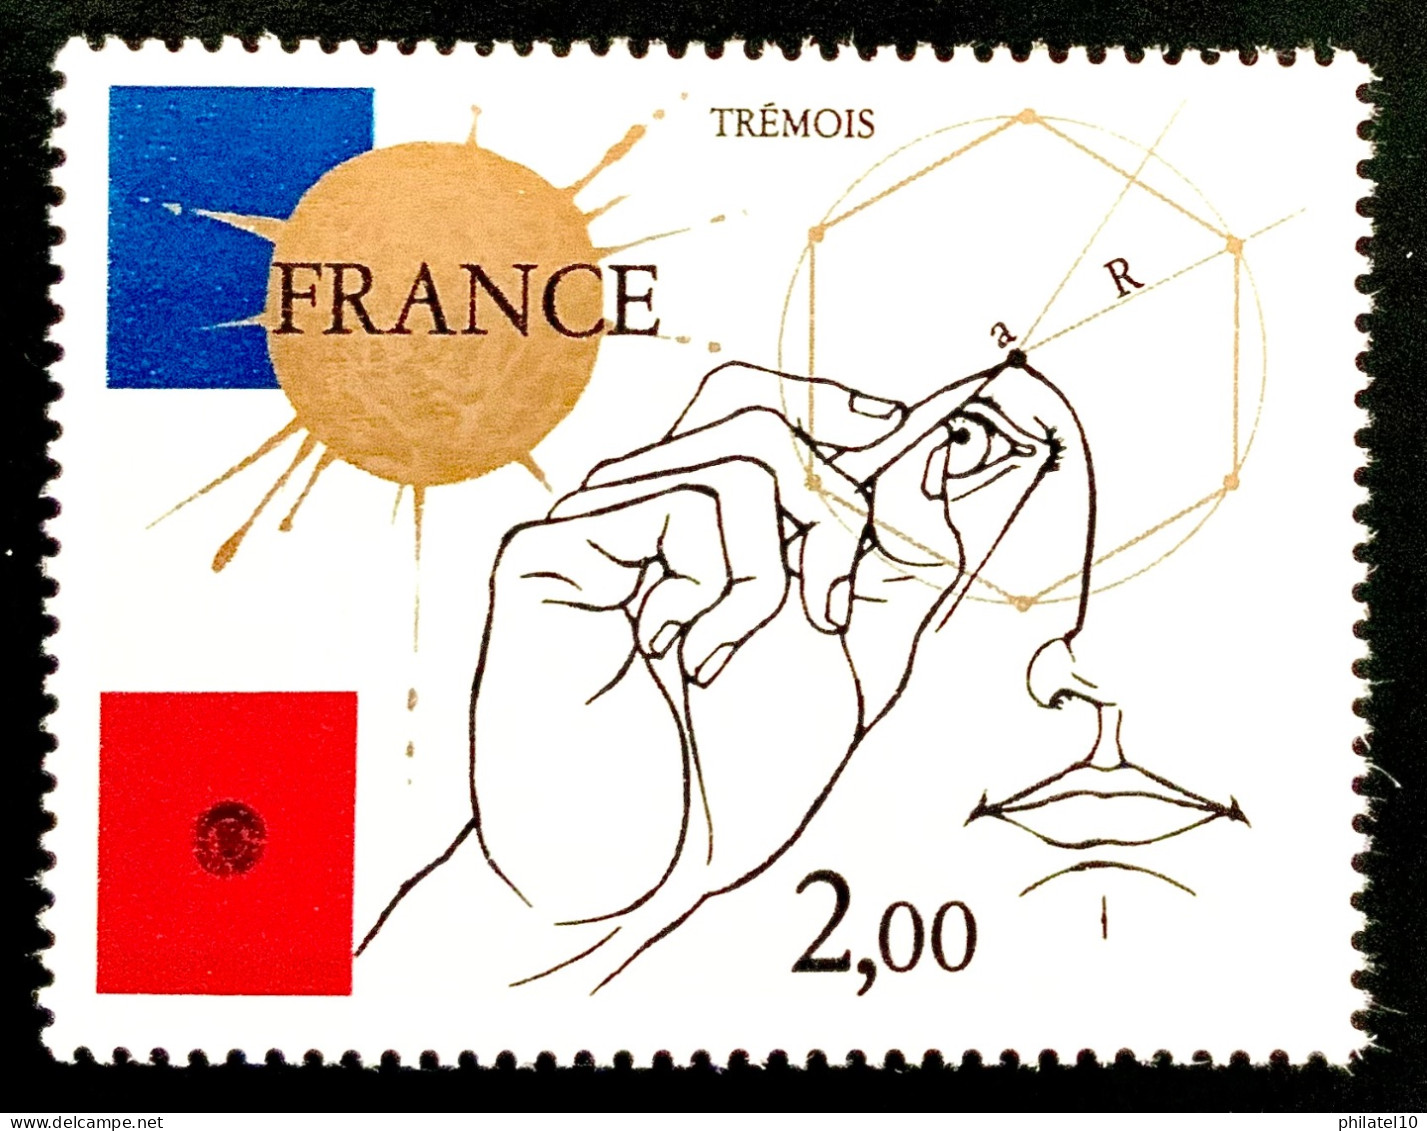 1981 FRANCE N 2141 TREMOIS 2,00F - NEUF** - Ongebruikt